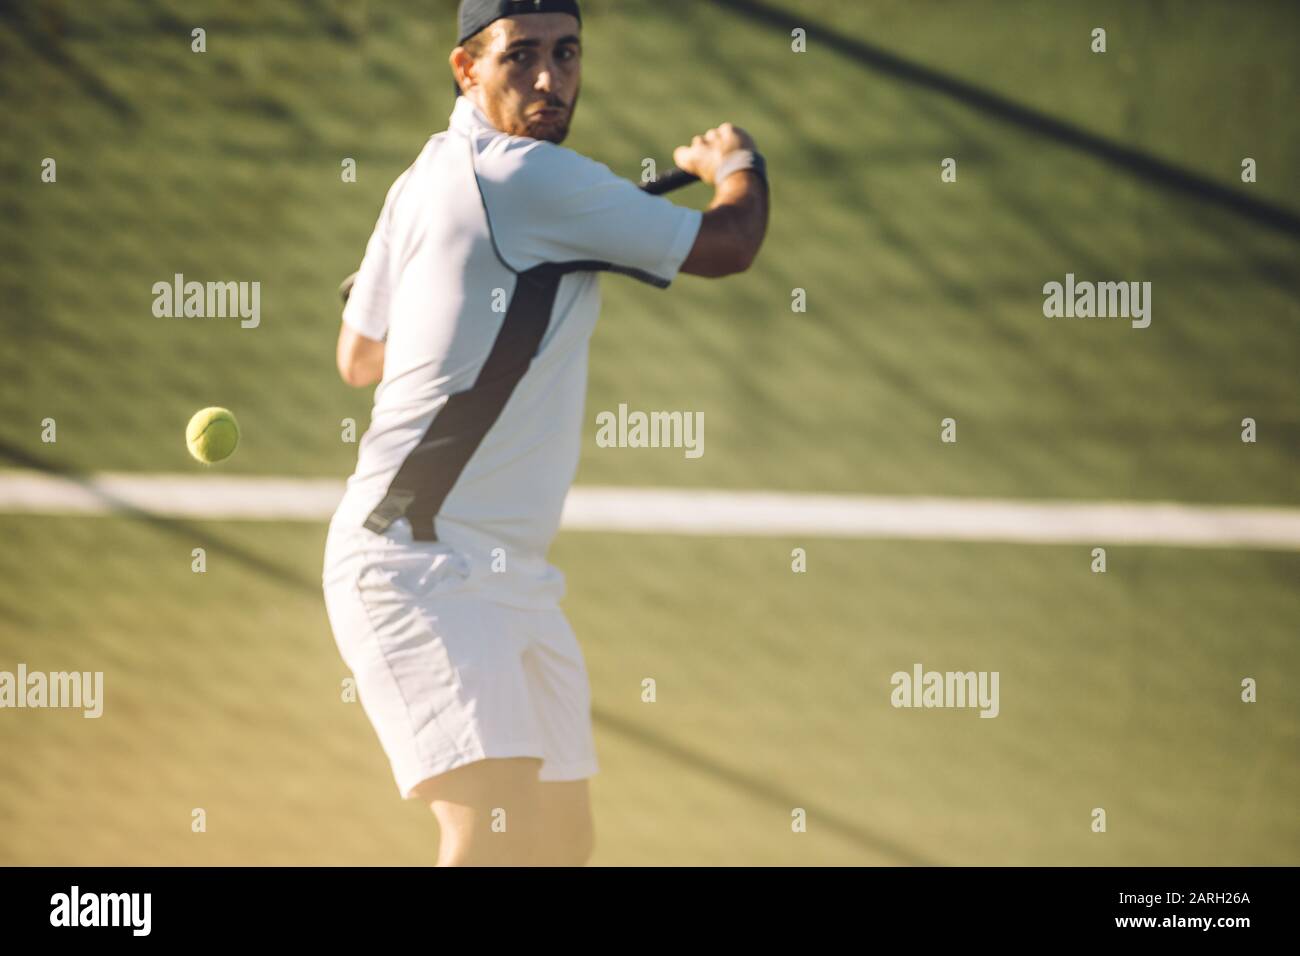 Un jeune joueur de tennis masculin frappe une main arrière puissante pendant un match. Joueur de tennis jouant au tennis sur un terrain de golf. Banque D'Images